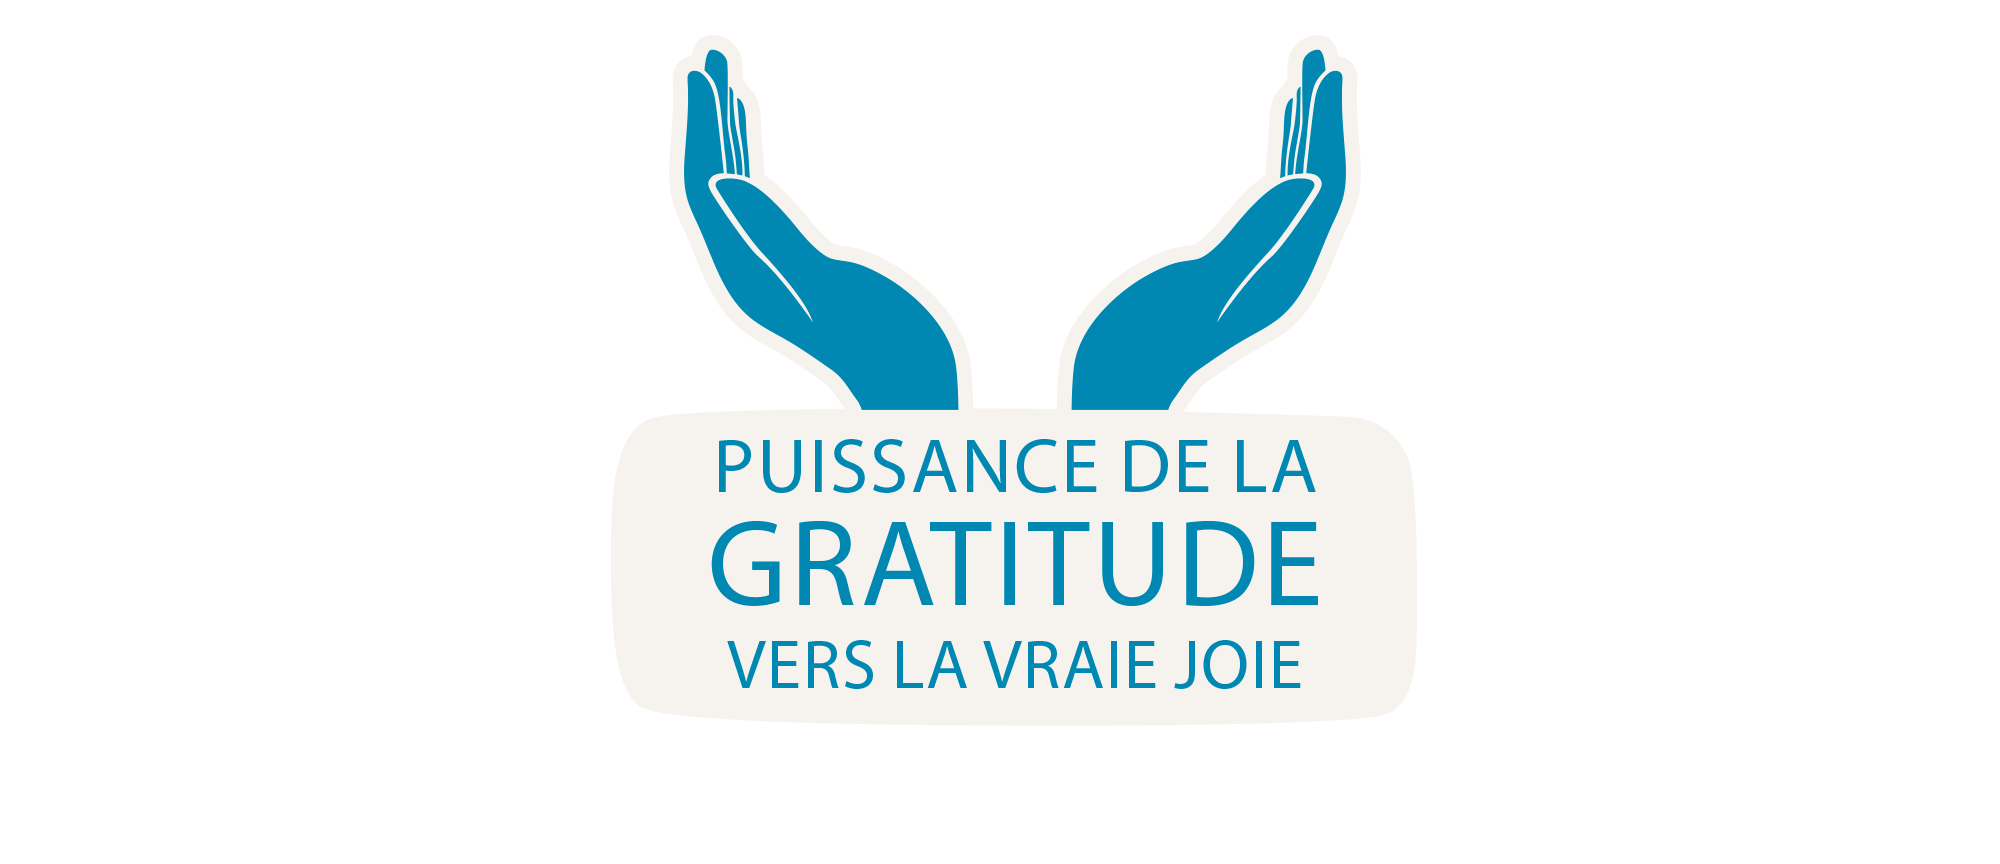 Journal de gratitude : apprendre à valoriser ses pensées positives à l'aide  d'un carnet - Elle